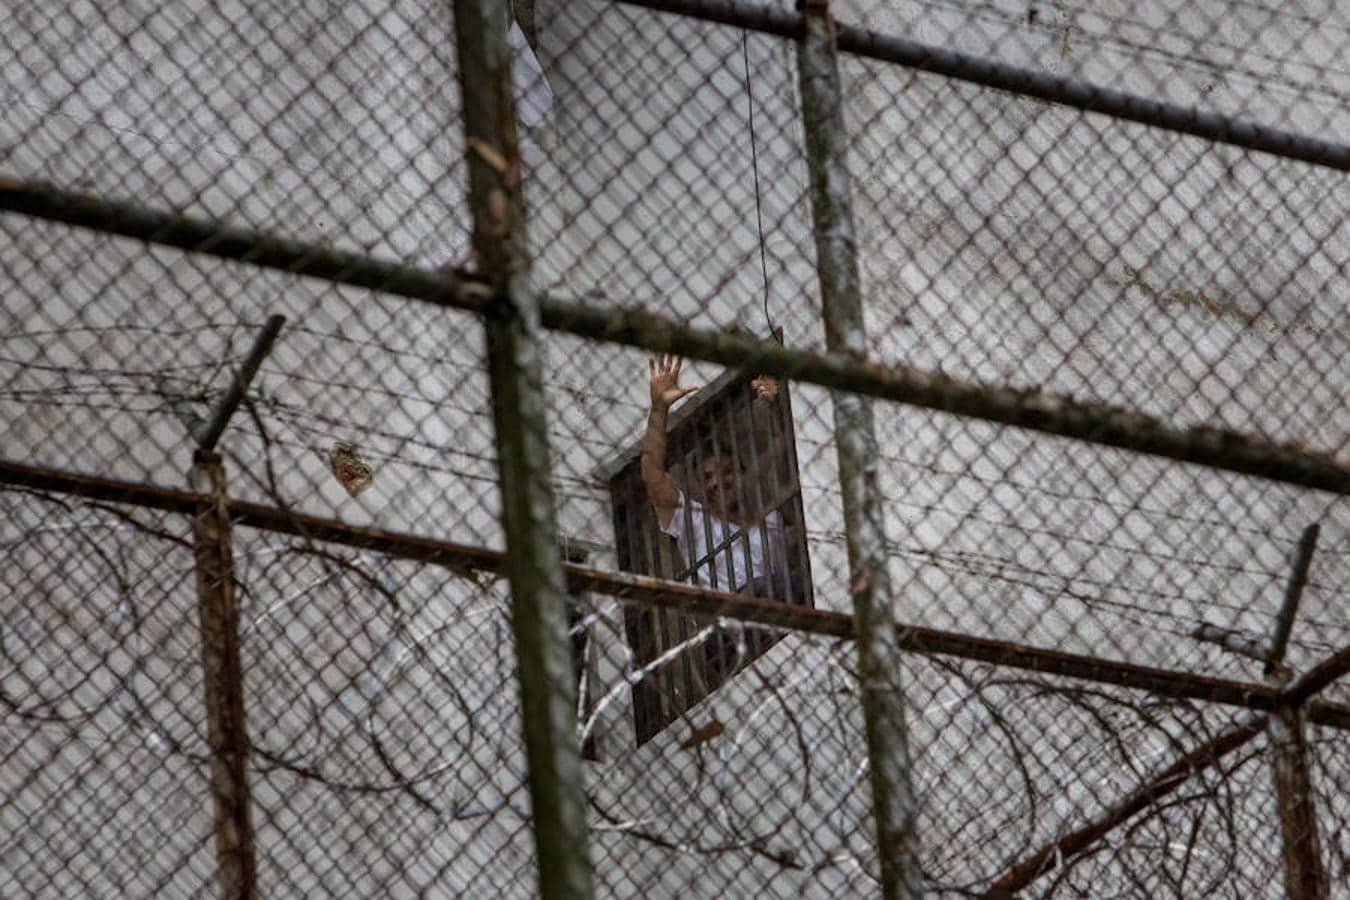 Cinco años de la injusta prisión de Leopoldo López. Vista de la fachada de la celda del líder opositor Leopoldo López, donde estuvo detenido desde 2014 hasta el 8 de julio de 2017 donde fue trasladado a su casa en Caracas